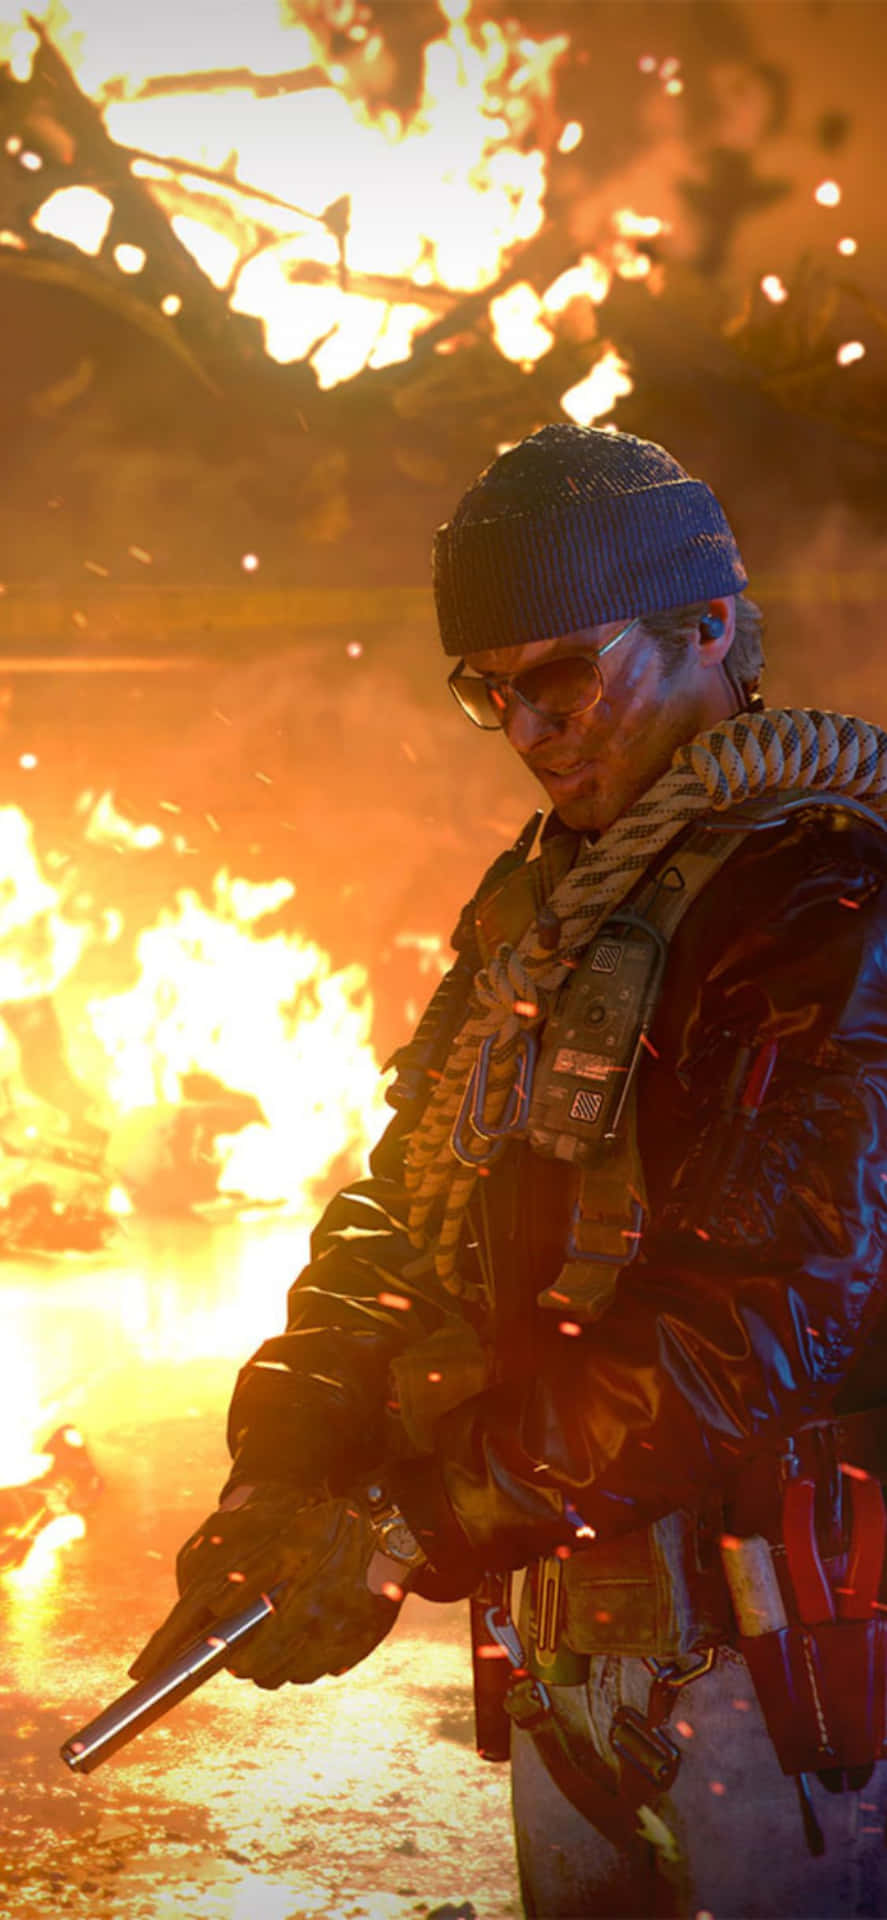 Iphonex Bakgrundsbild För Call Of Duty Black Ops Cold War Med Russell Adler.